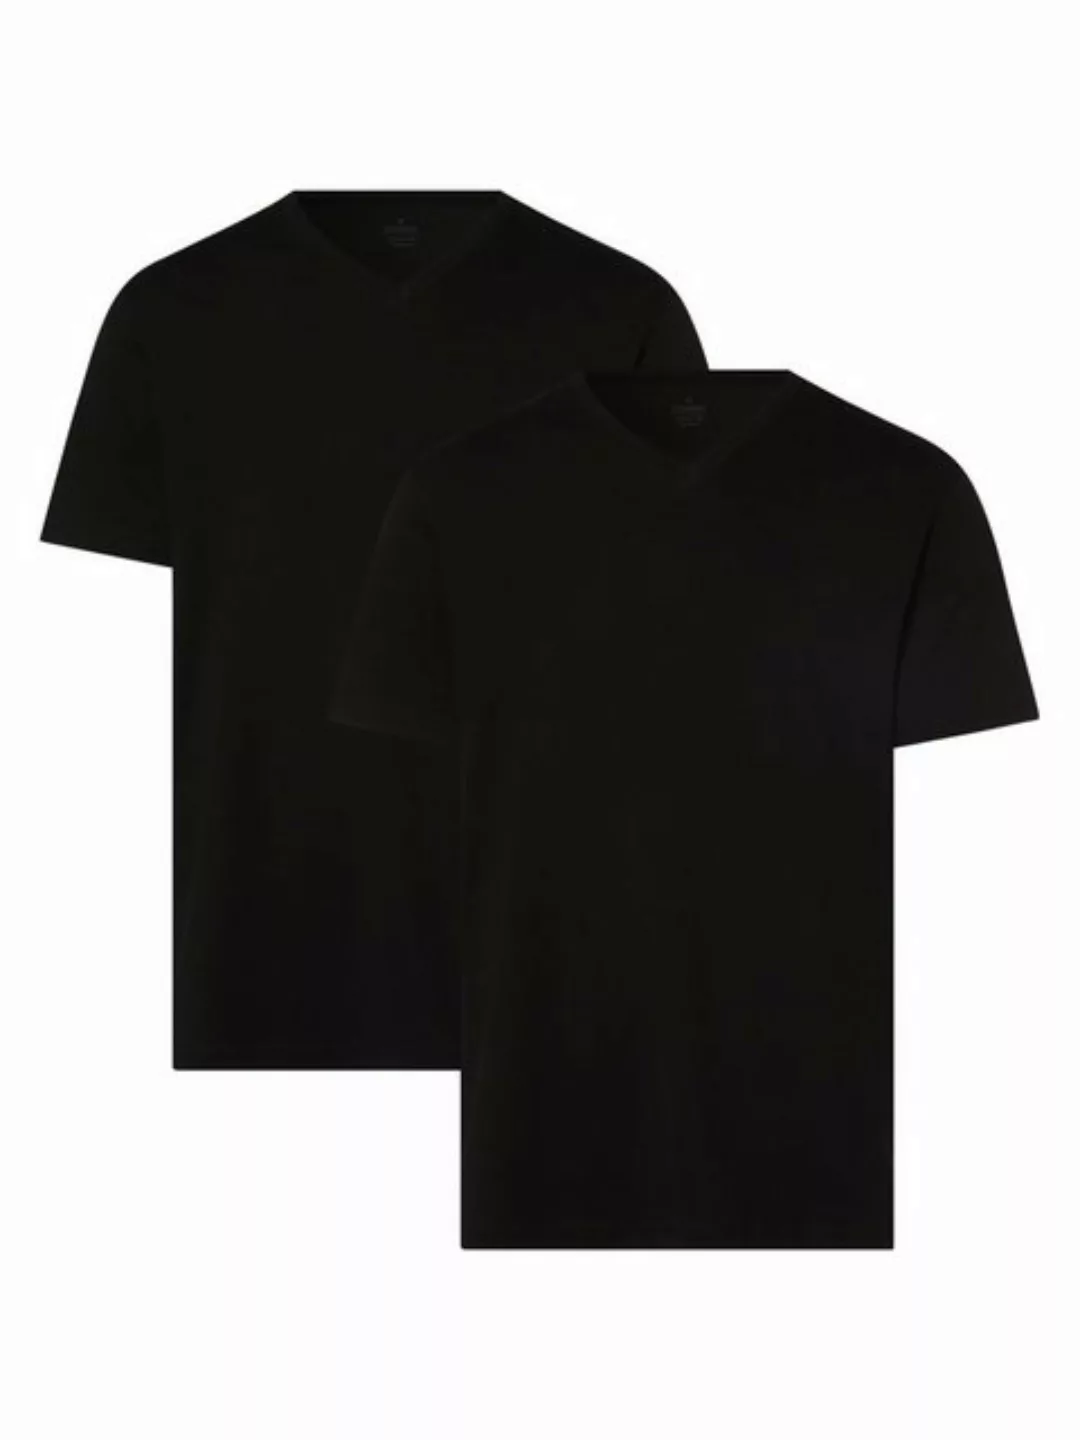 RAGMAN T-Shirt Doppelpack 40000/006 günstig online kaufen